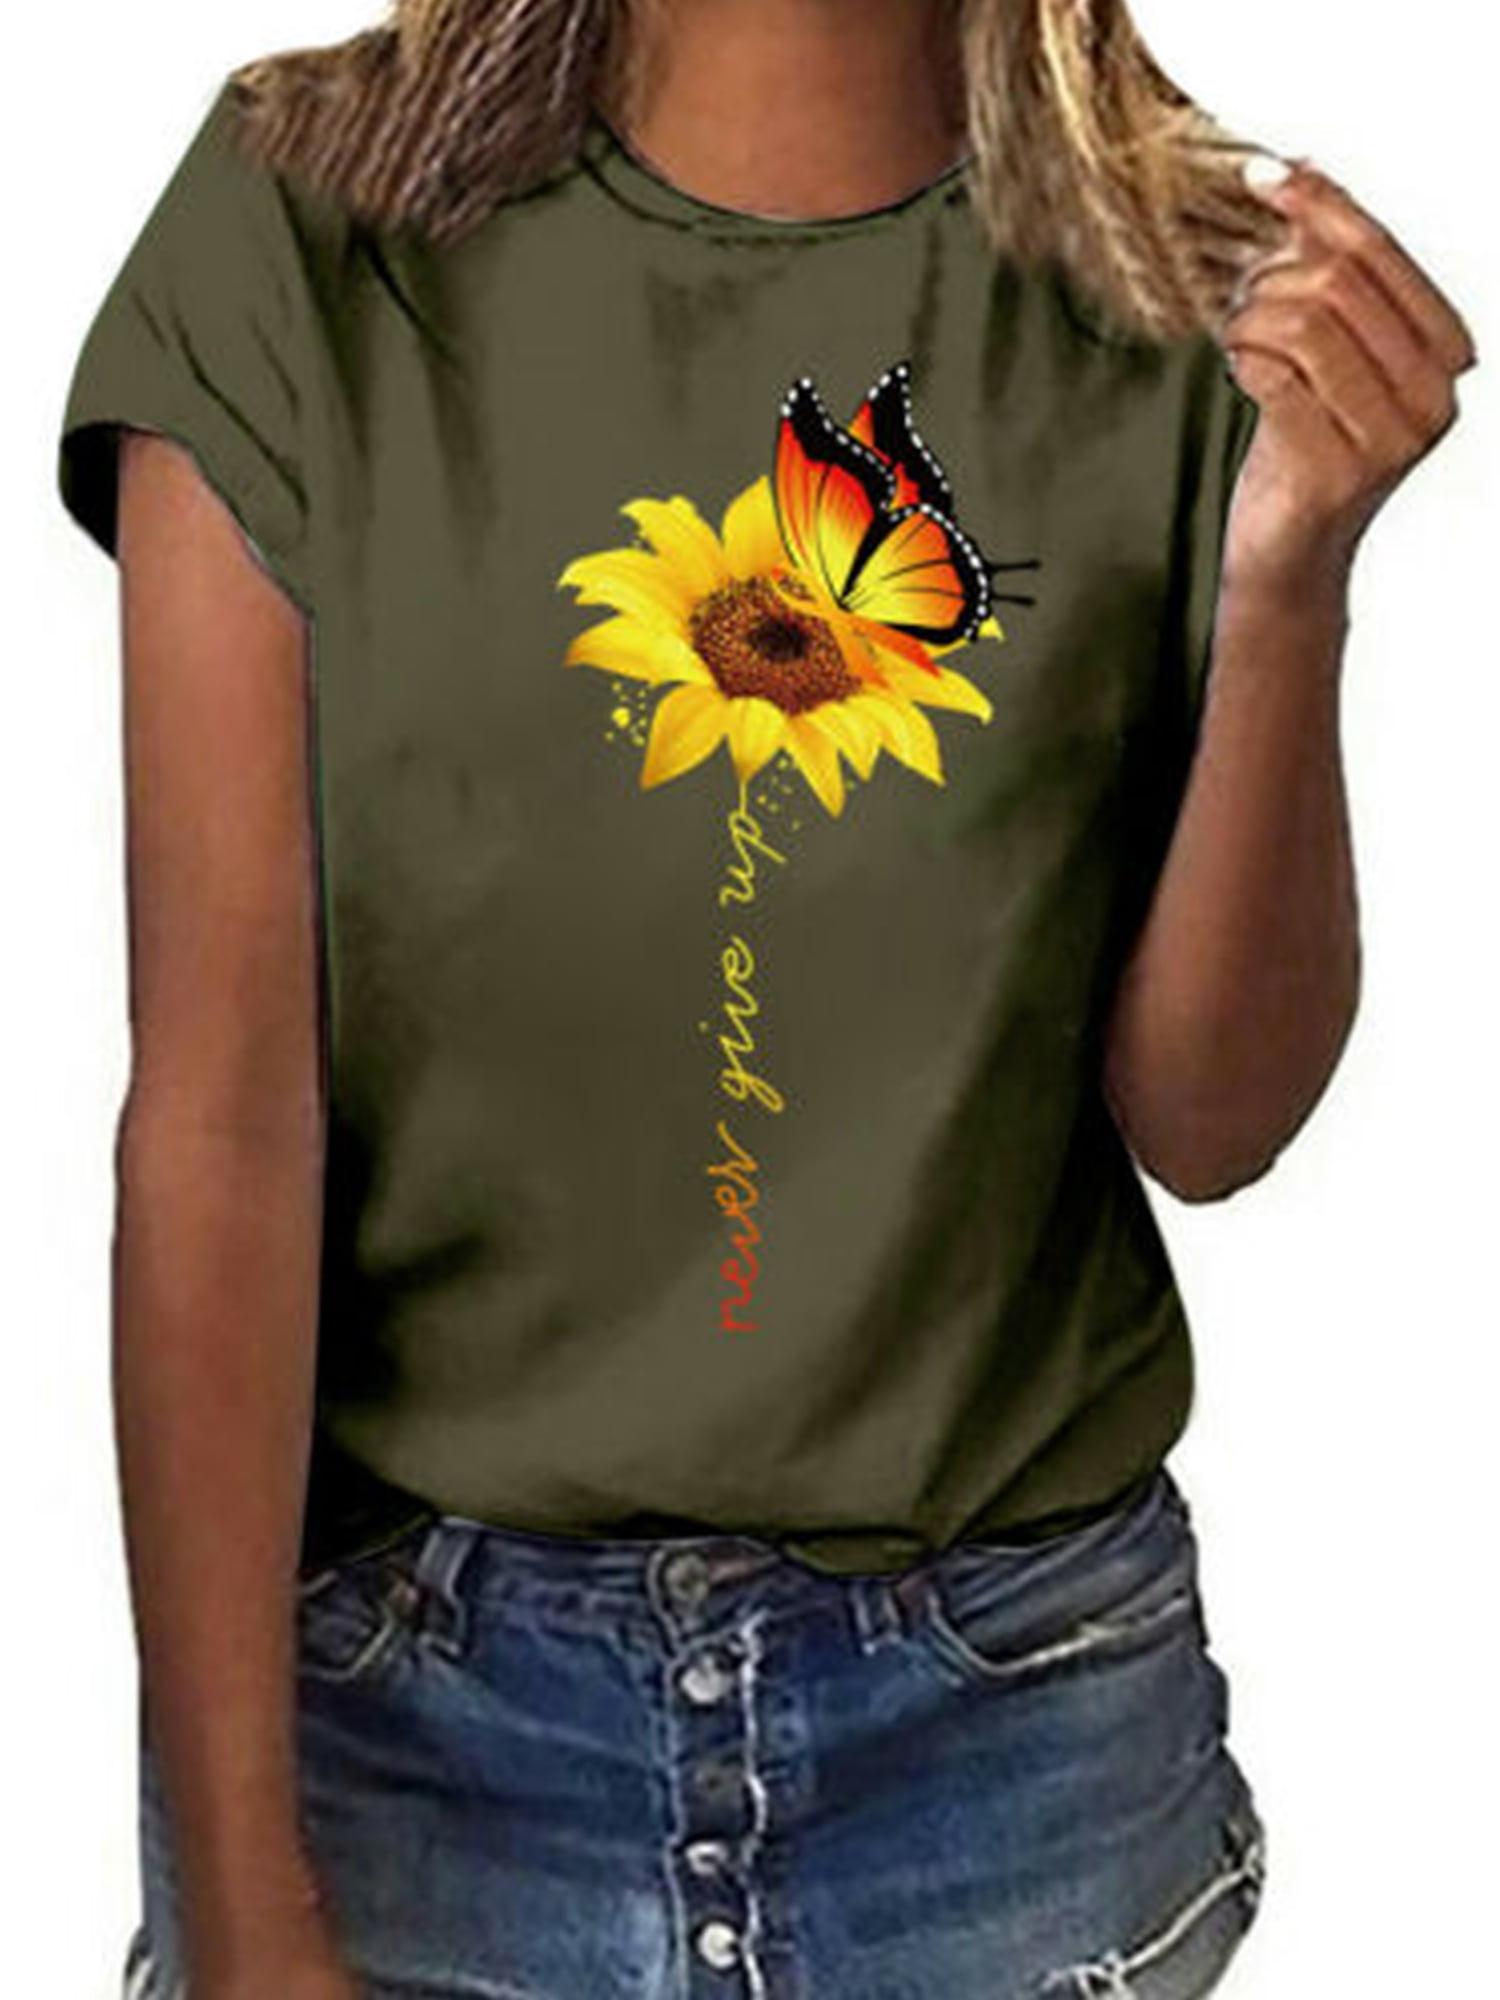 Kaei&Shi Roll Sleeve Graphic T Shirt Women Sunflower Tshirt Womens Summer Top Flower Print Short Sleeve Shirt Tee